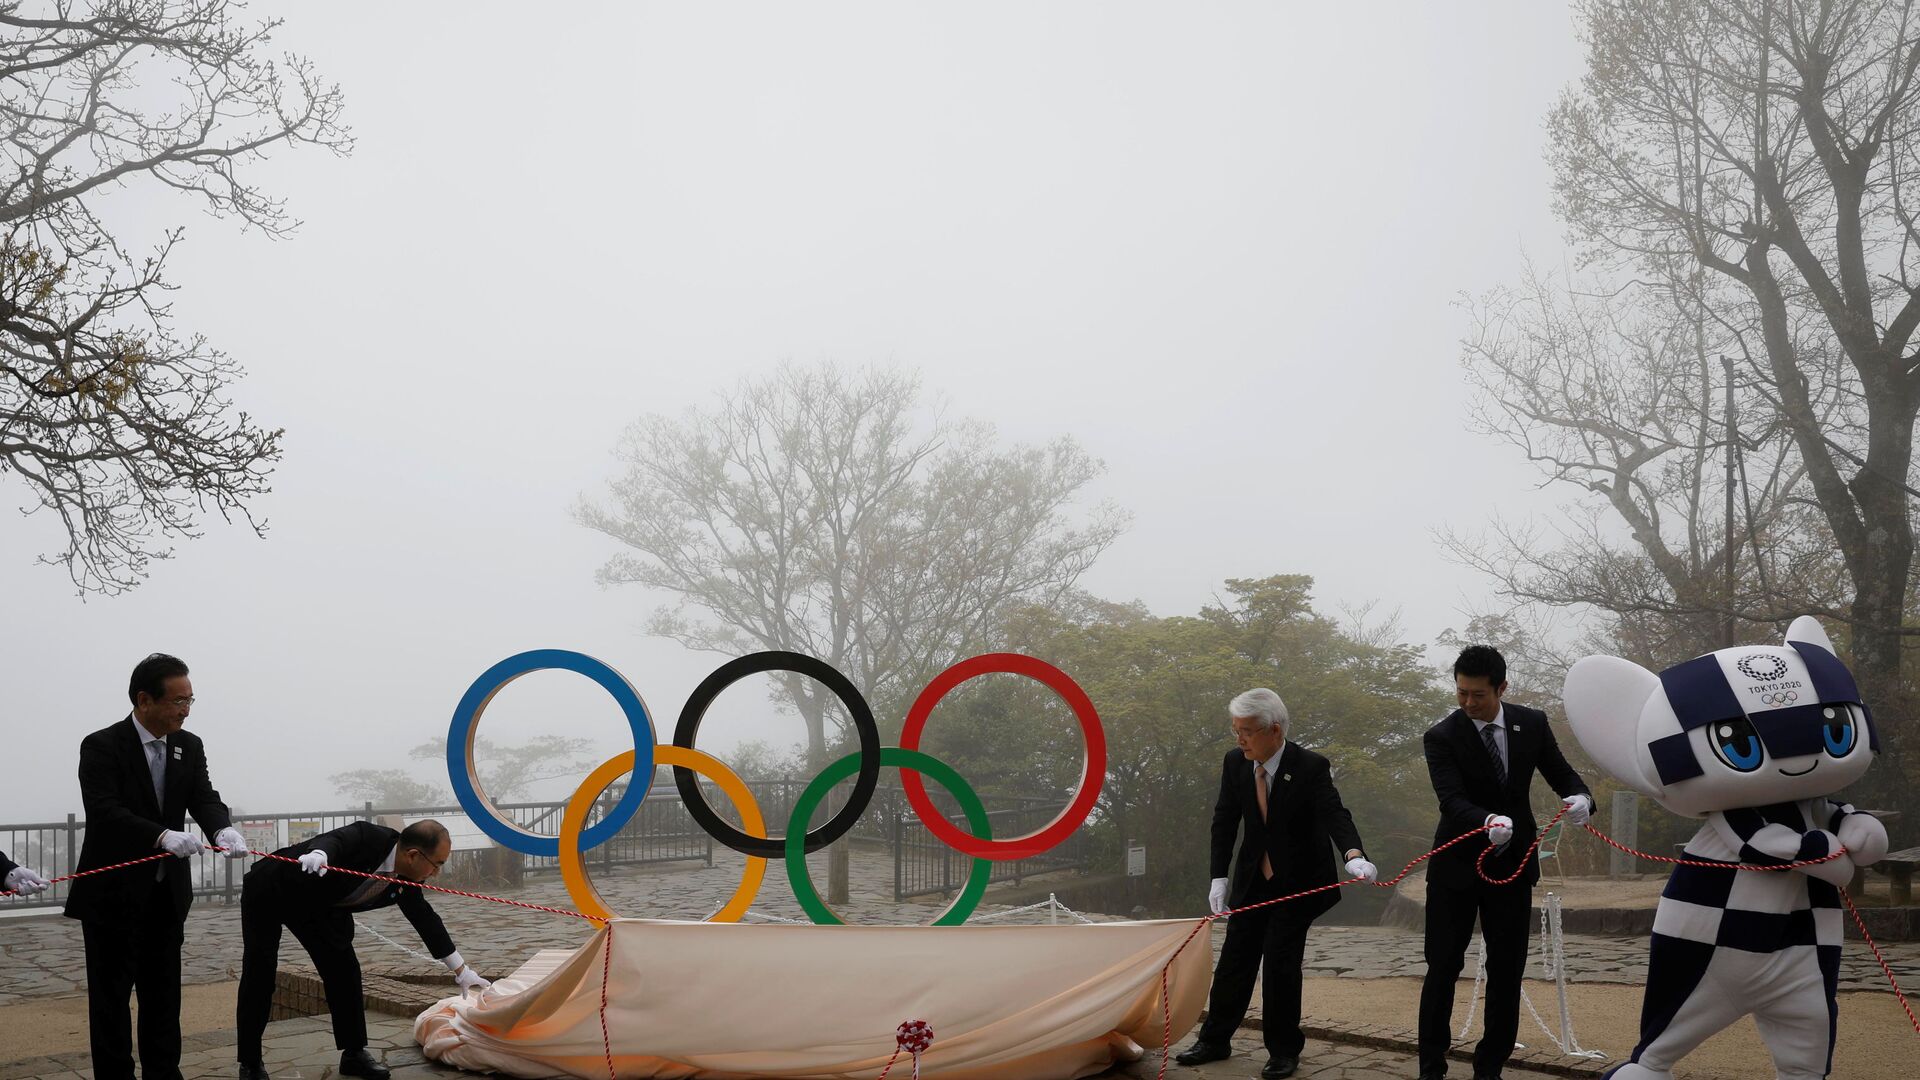 Презентация монумента Олимпийских колец на горе Такао на мероприятии по случаю 100 дней до Олийписких игр в Токио  - Sputnik Узбекистан, 1920, 08.07.2021